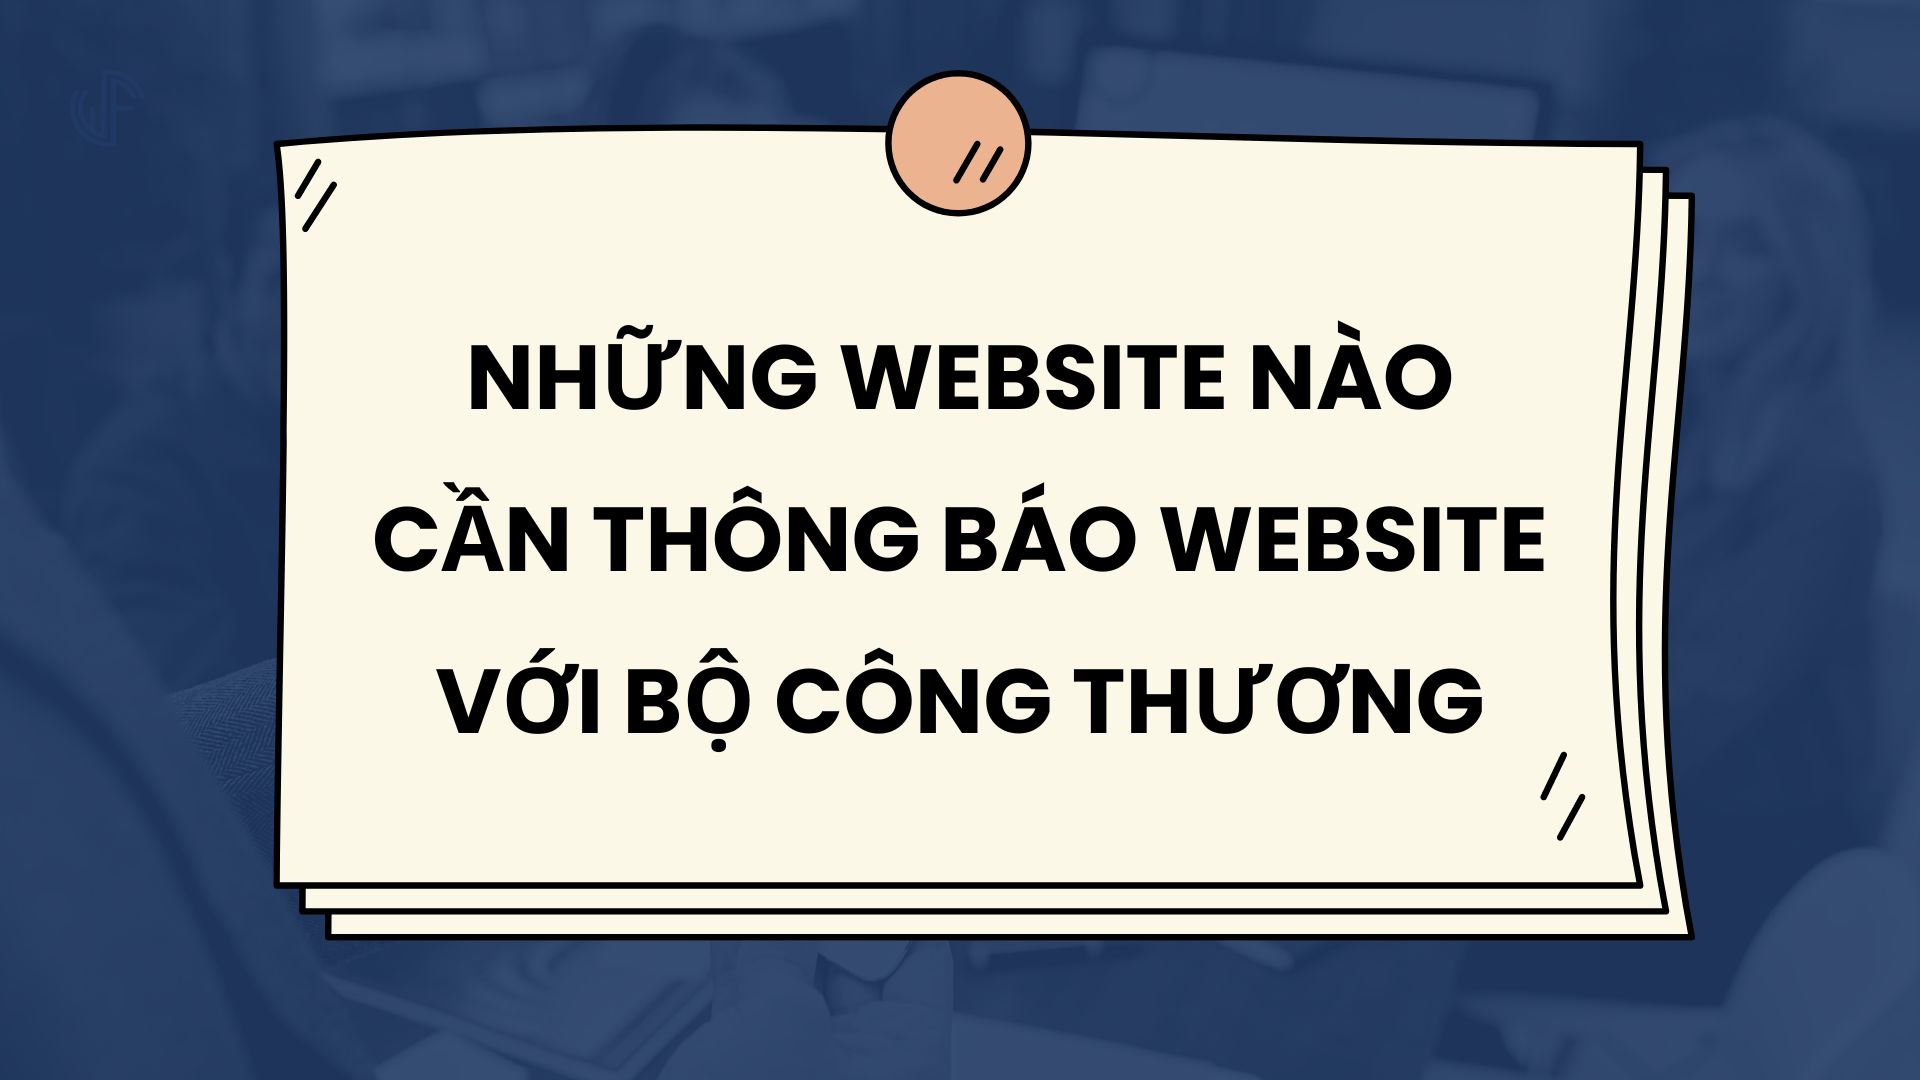 nhung-website-nao-can-thong-bao-website-voi-bo-cong-thuong